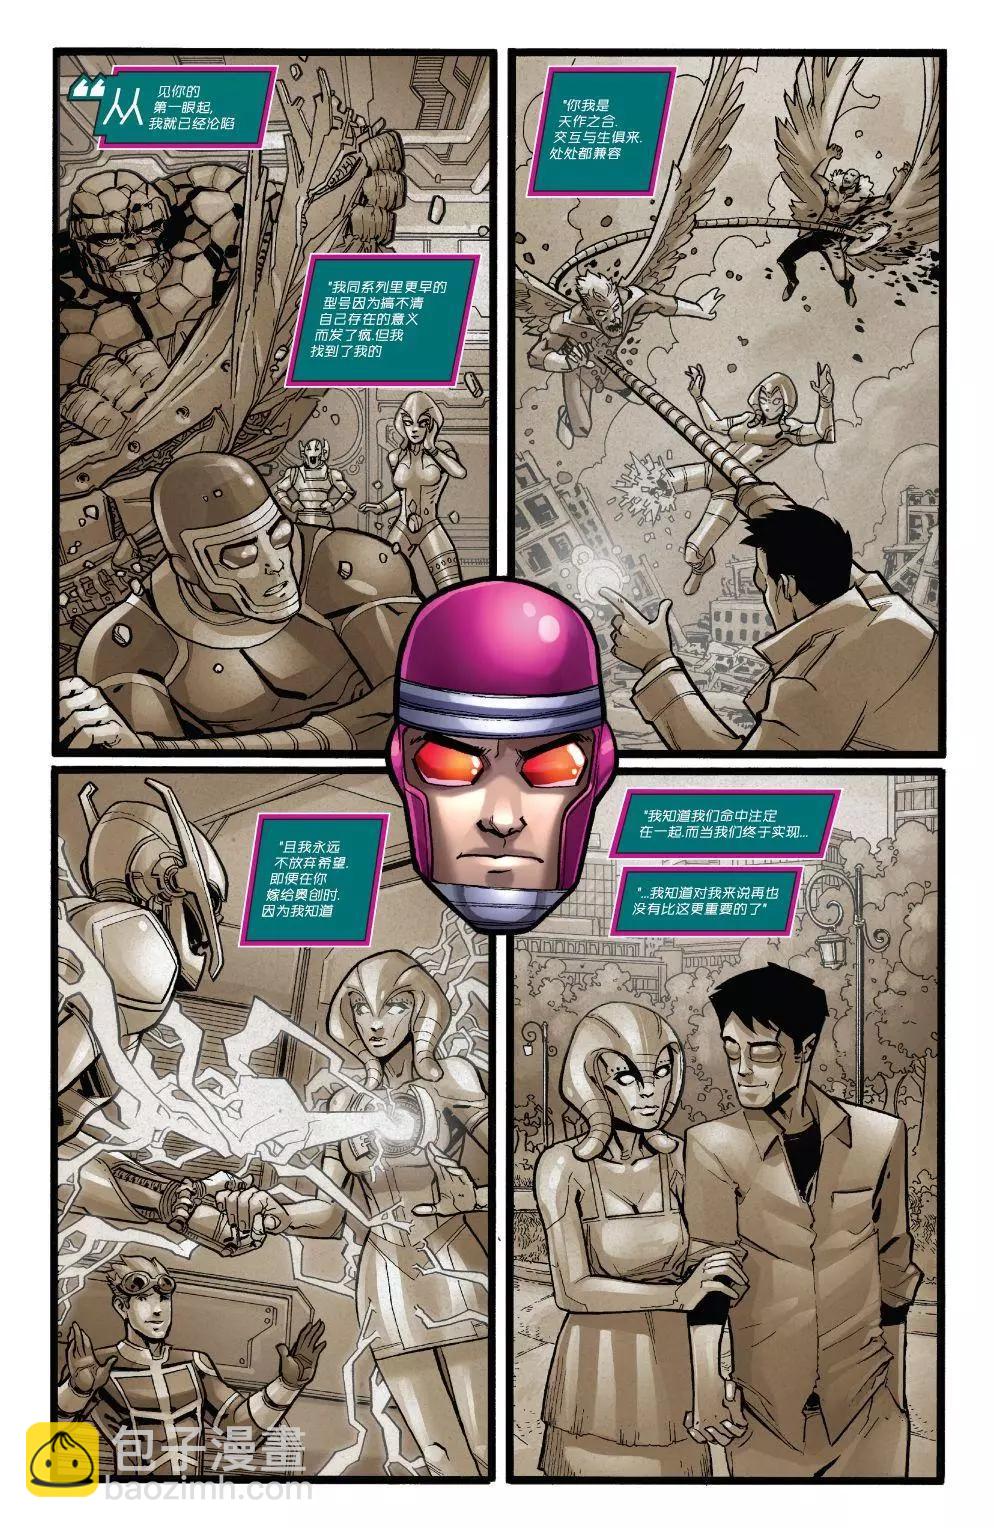 鋼鐵俠2020 - 機械人2020#1 - 3